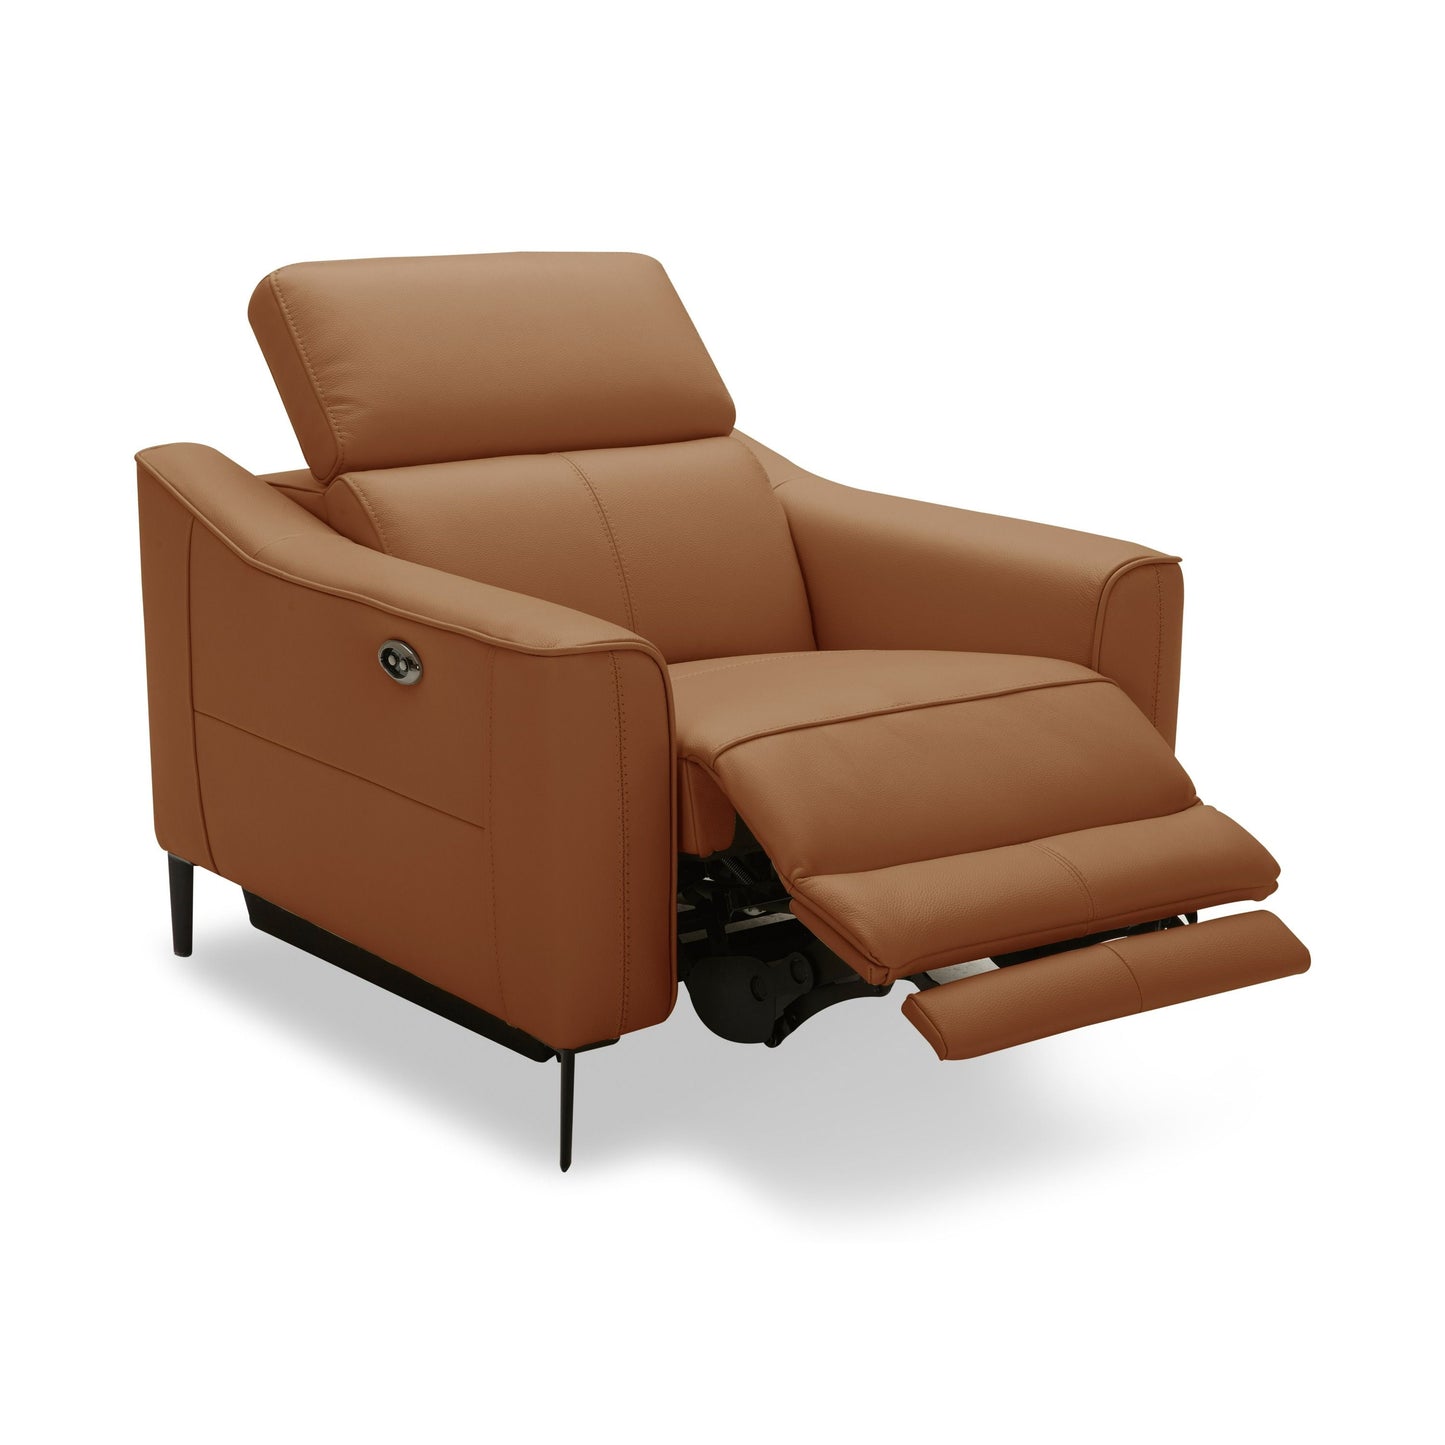 Divani Casa Eden - Modern Camel Leather Recliner Chair